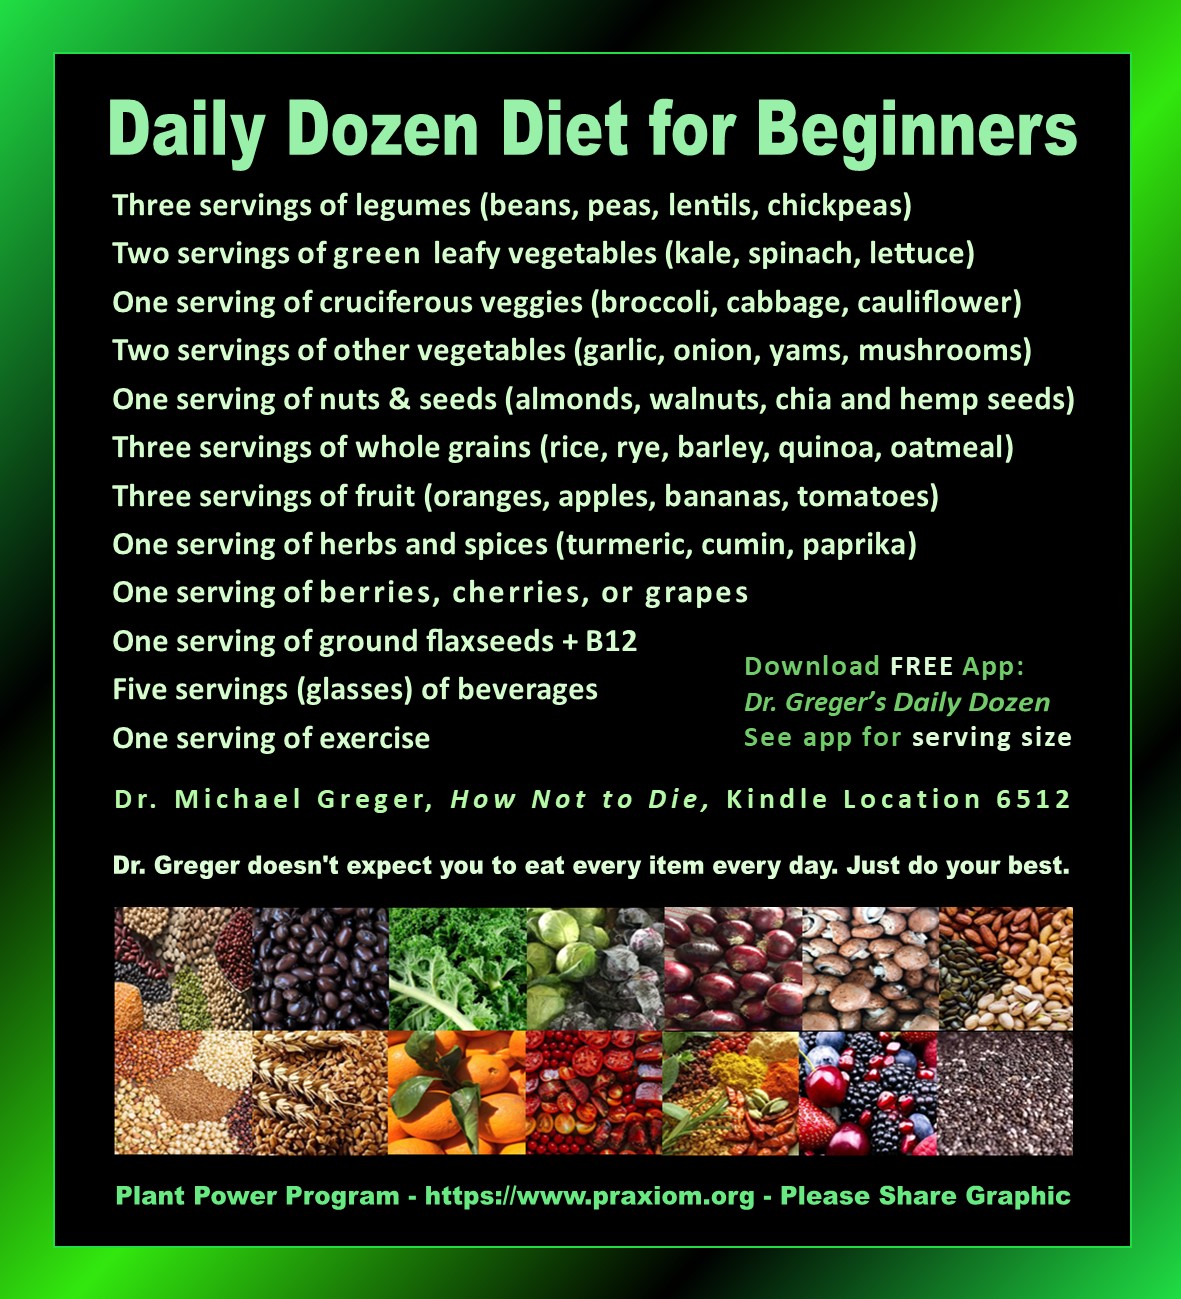 Daily Dozen Diet Includes Seeds